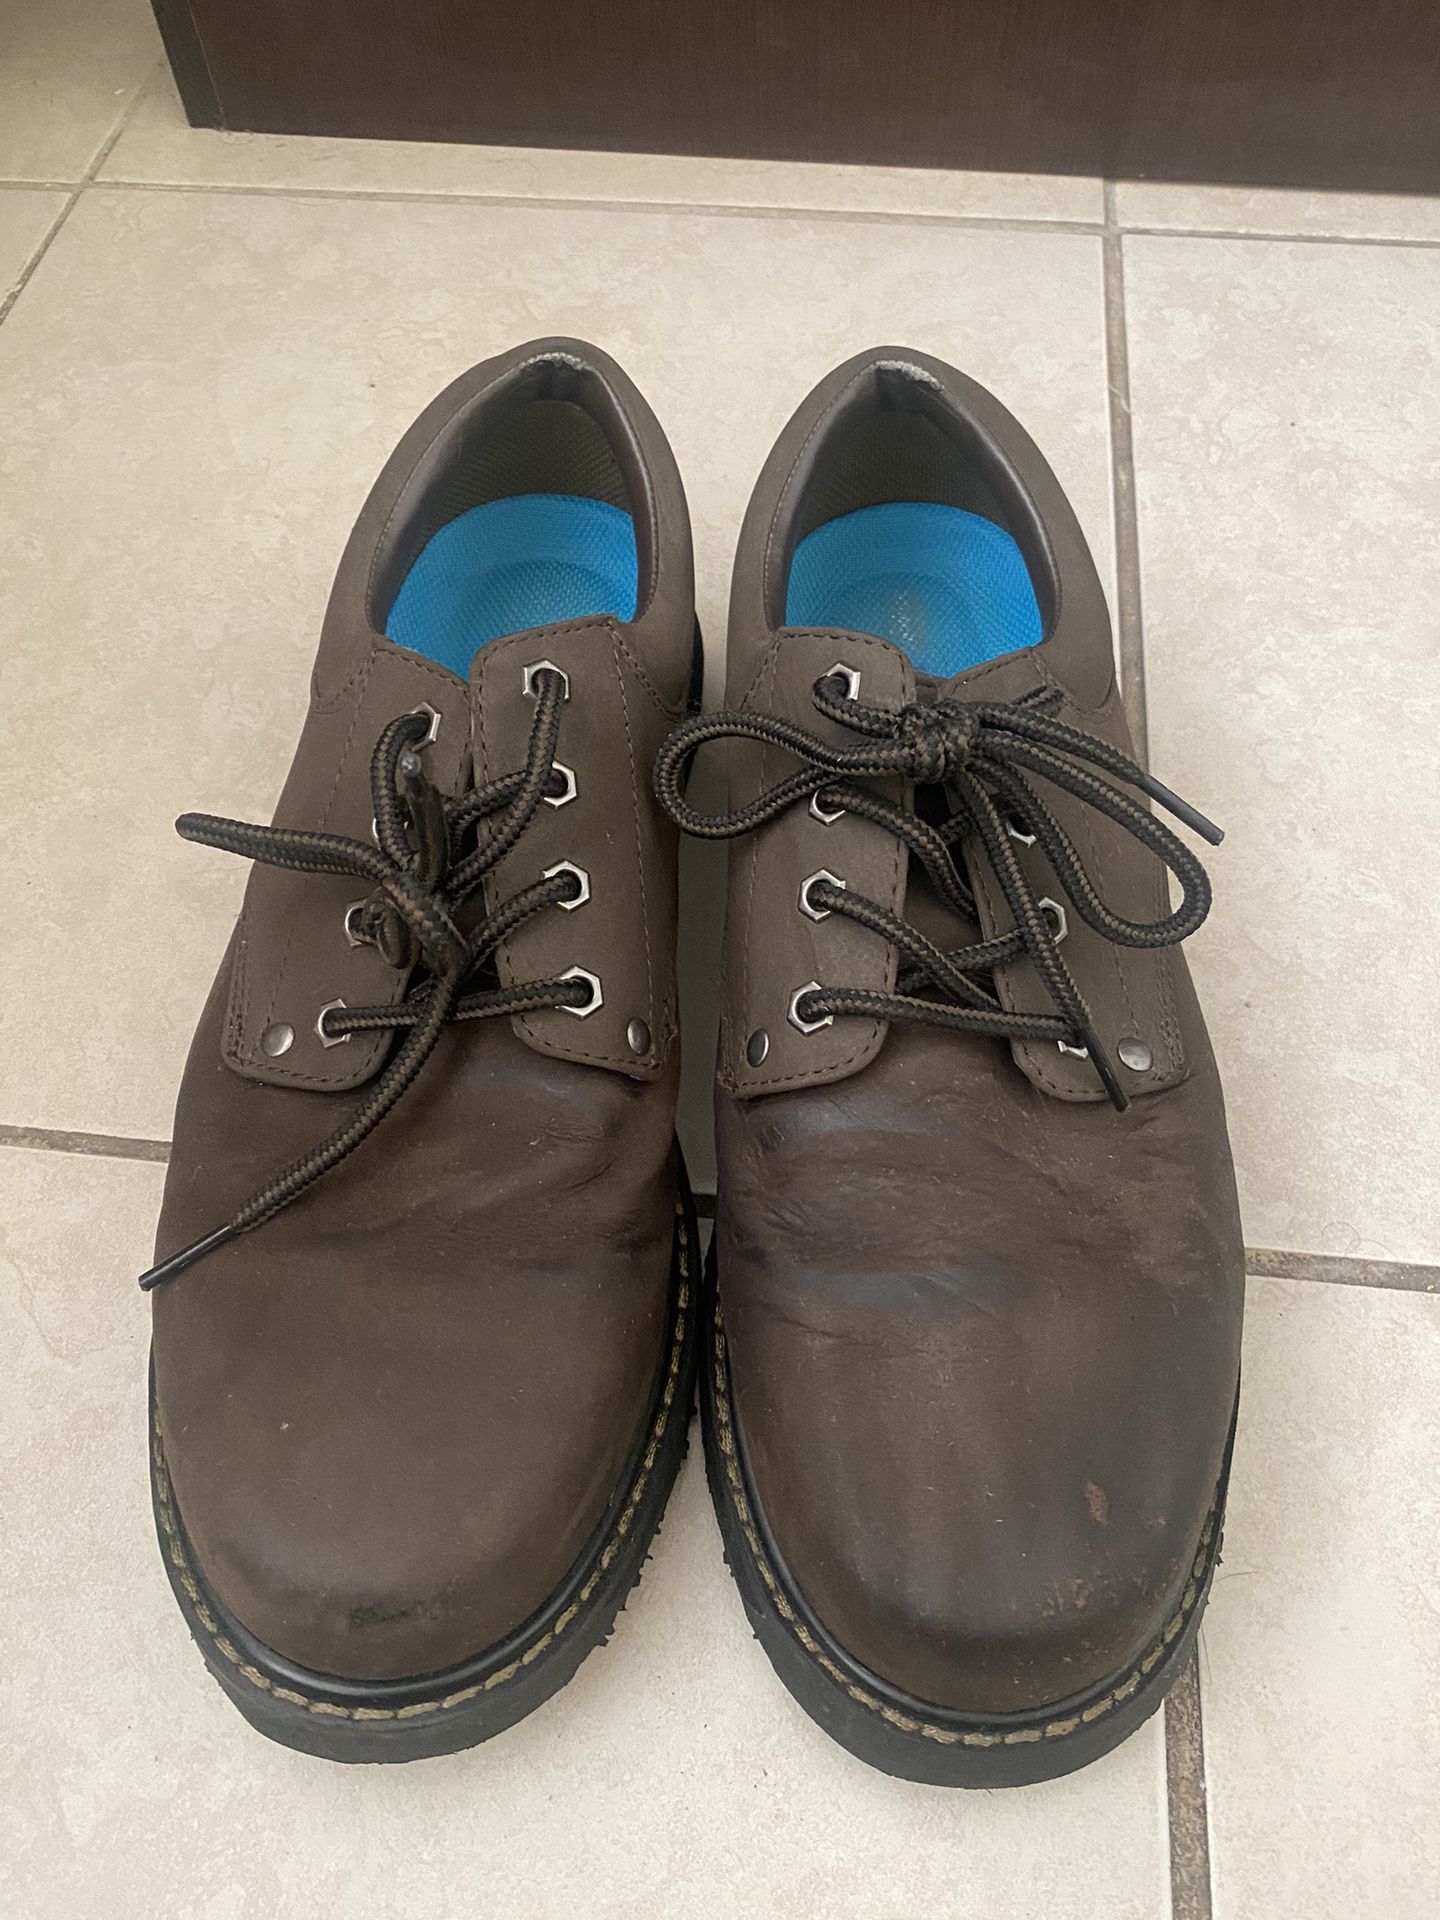 Drscholls Shoes/boots